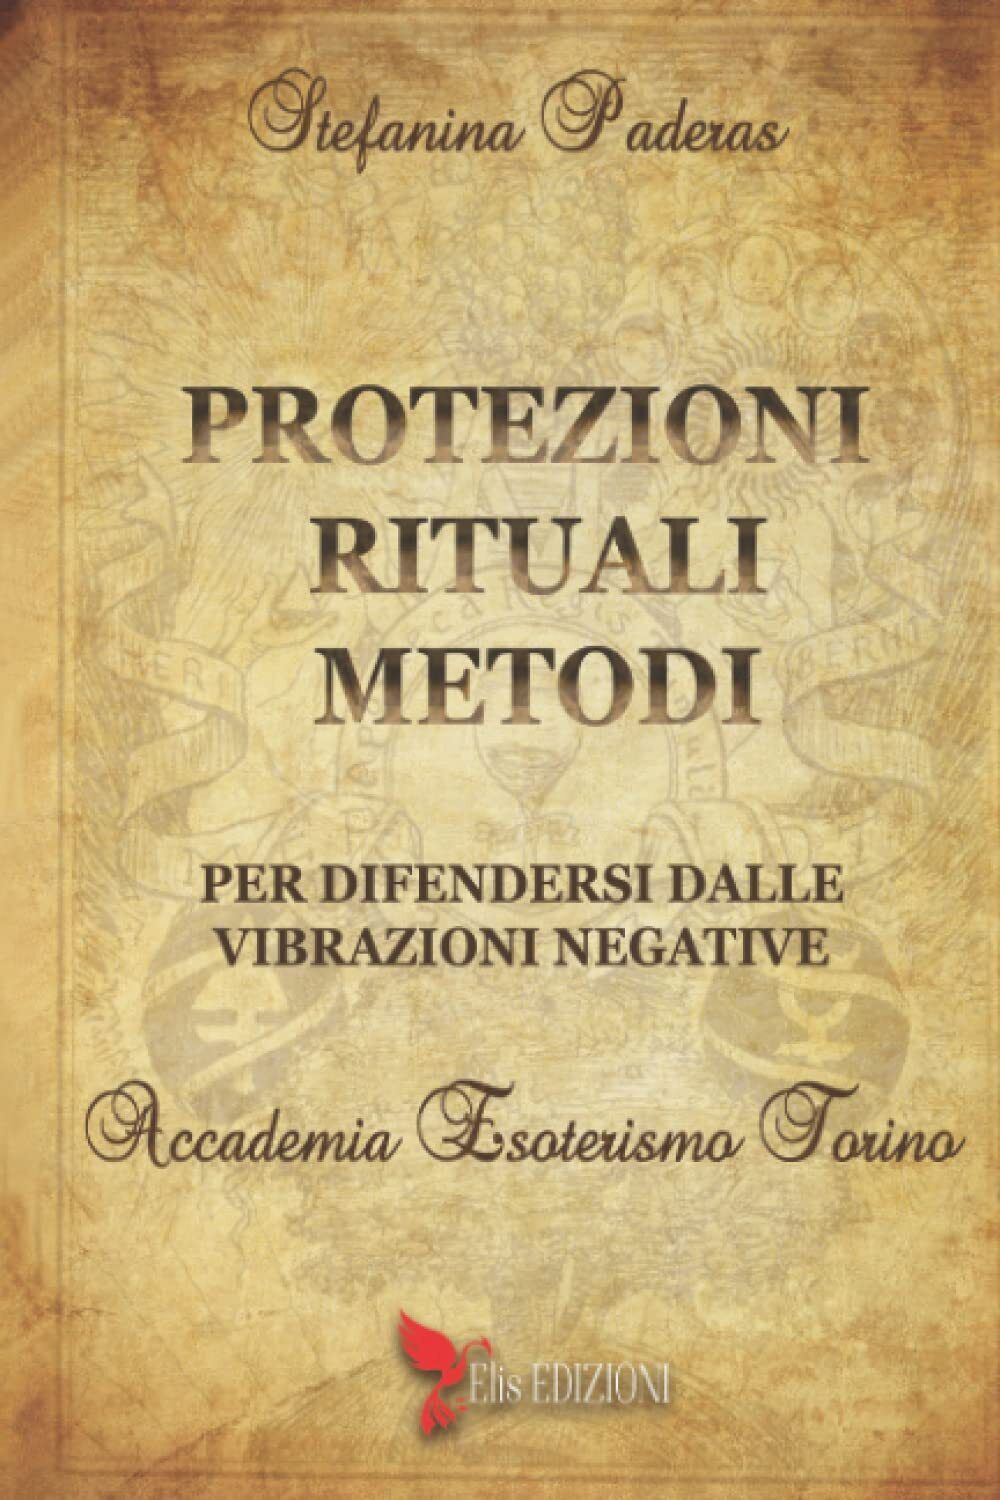 Protezioni rituali e metodi per difendersi dalle vibrazioni negative - 2021